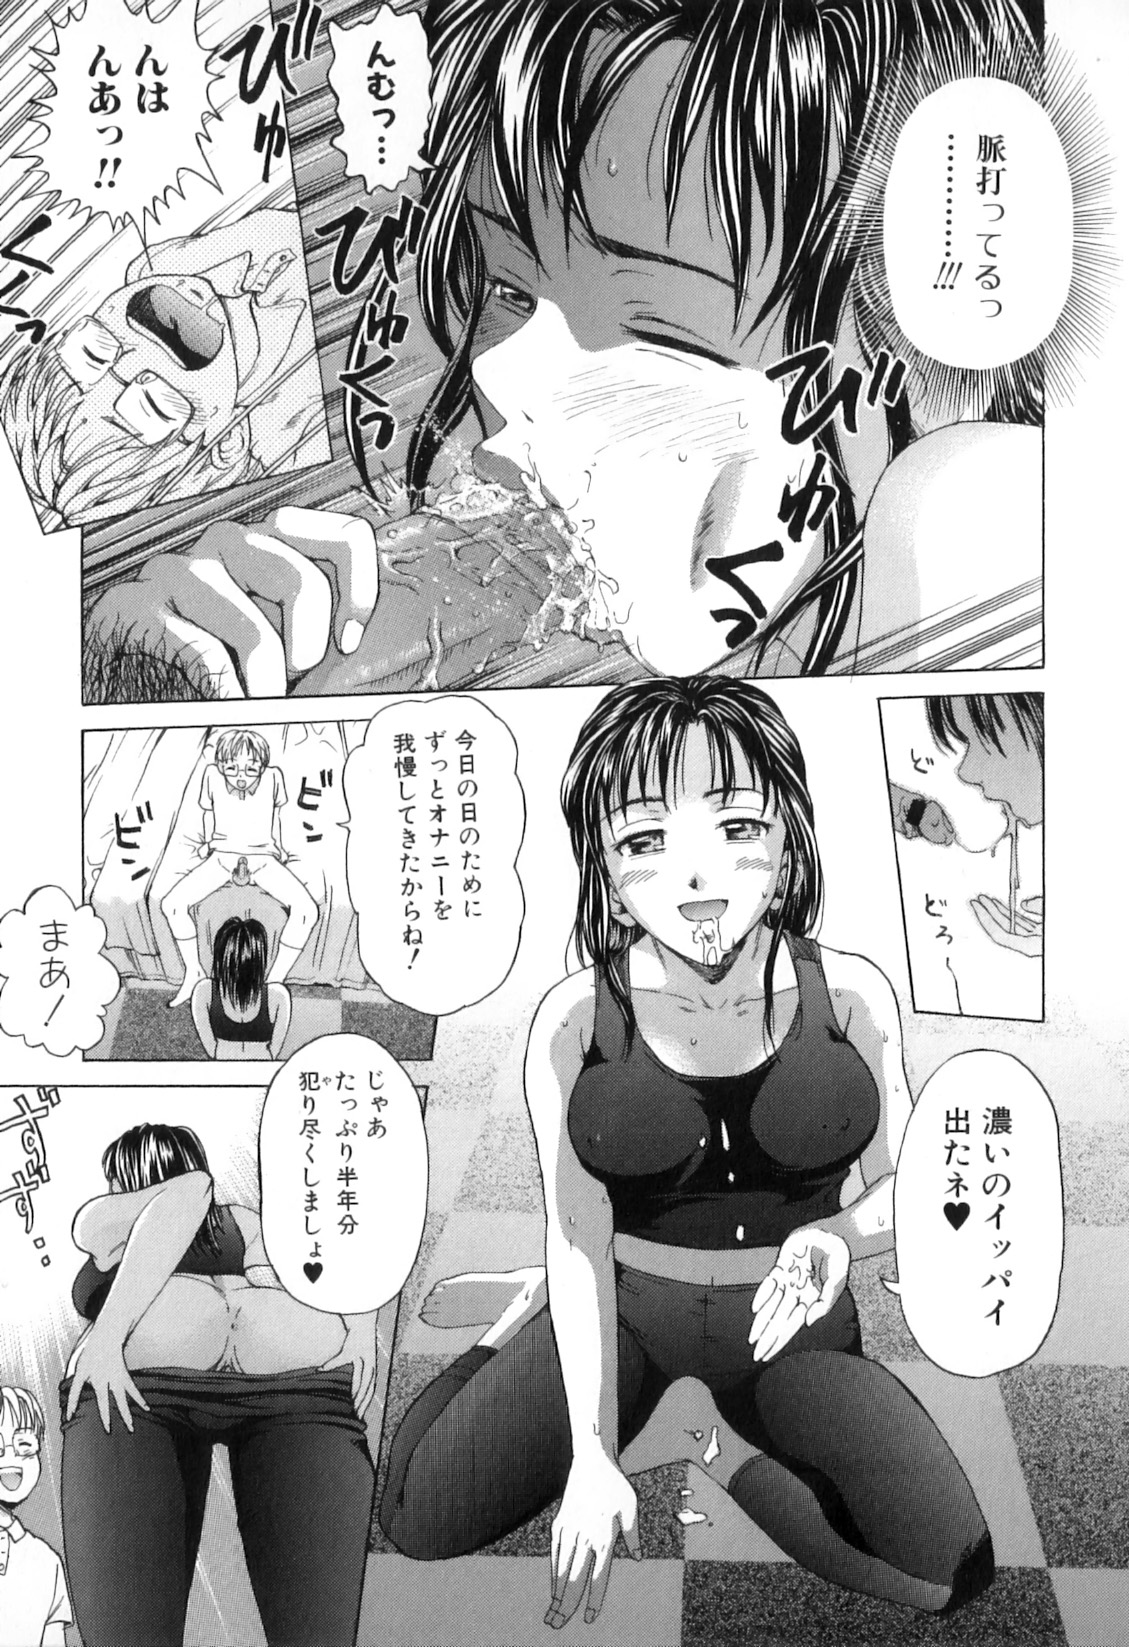 [Anthology] Boshi Chijou Kitan 2 page 31 full